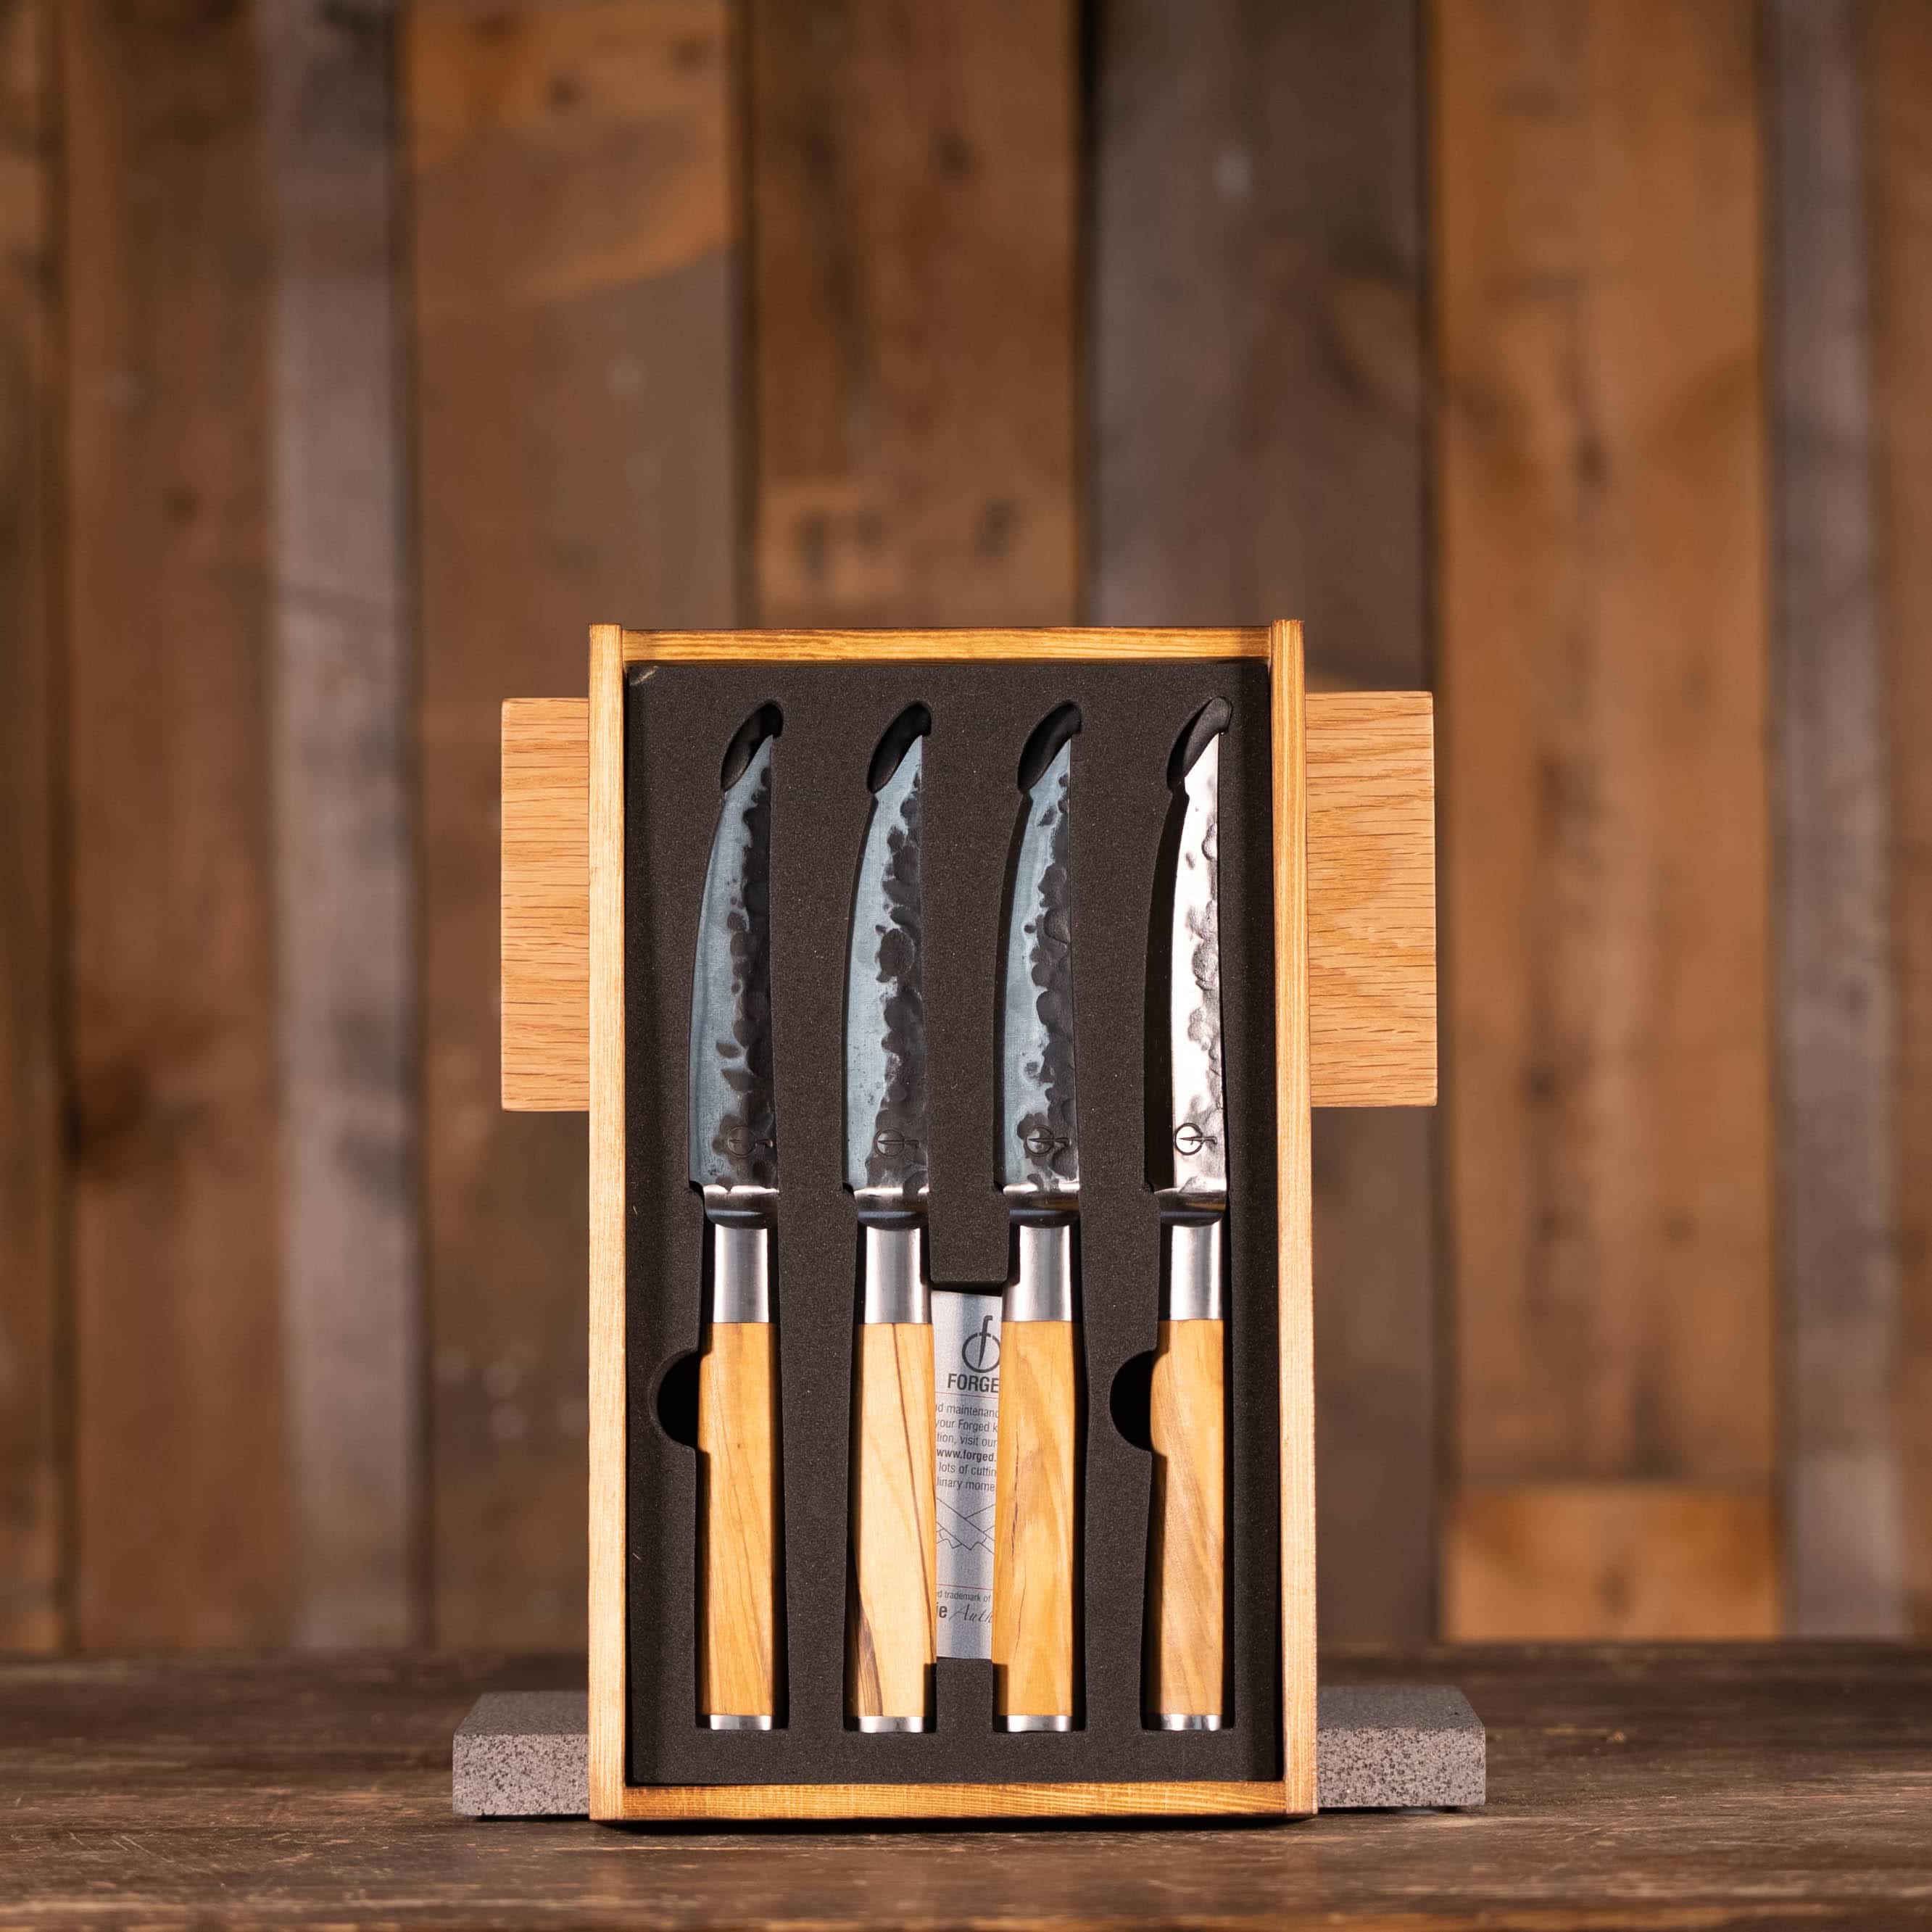 Olive Forged Steak Knives